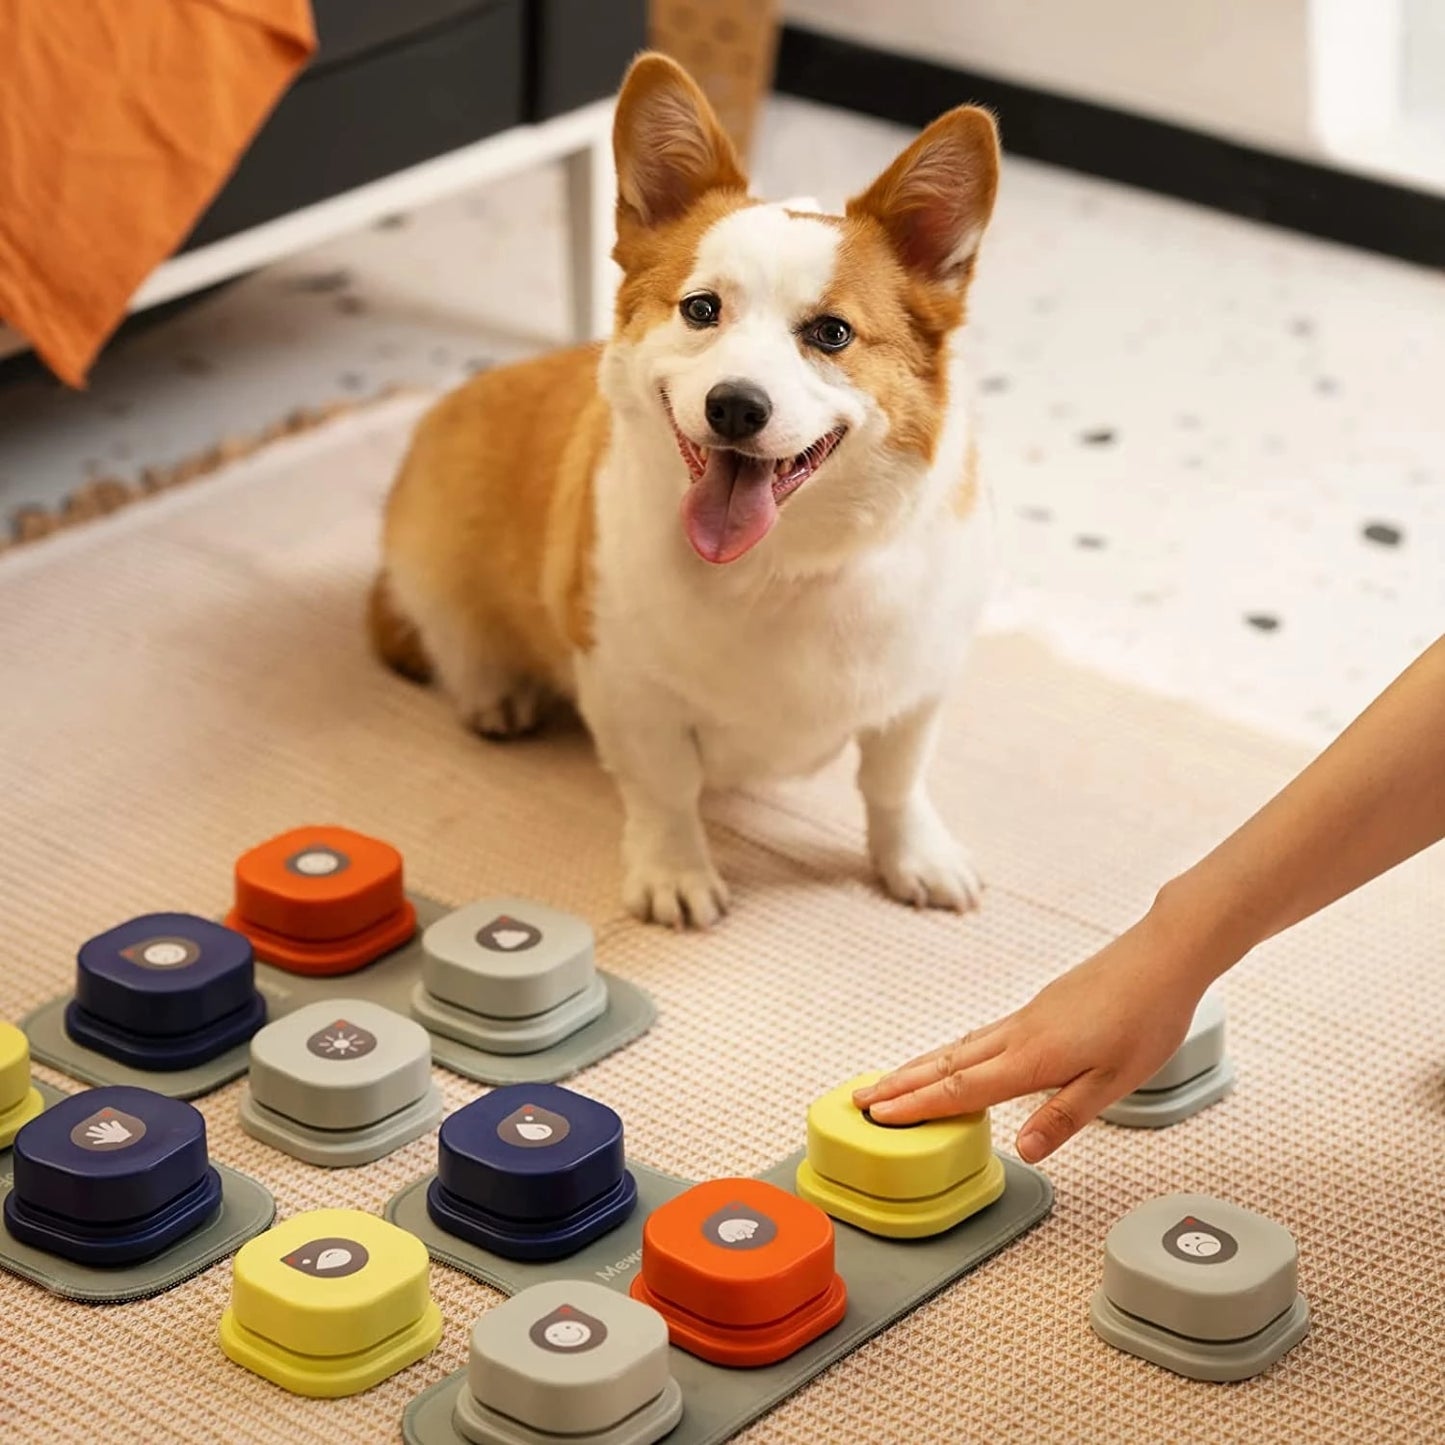 Comunicación Canina Avanzada: Botón de Grabación Parlante para Perro, el Juguete Inteligente que Fortalece el Vínculo